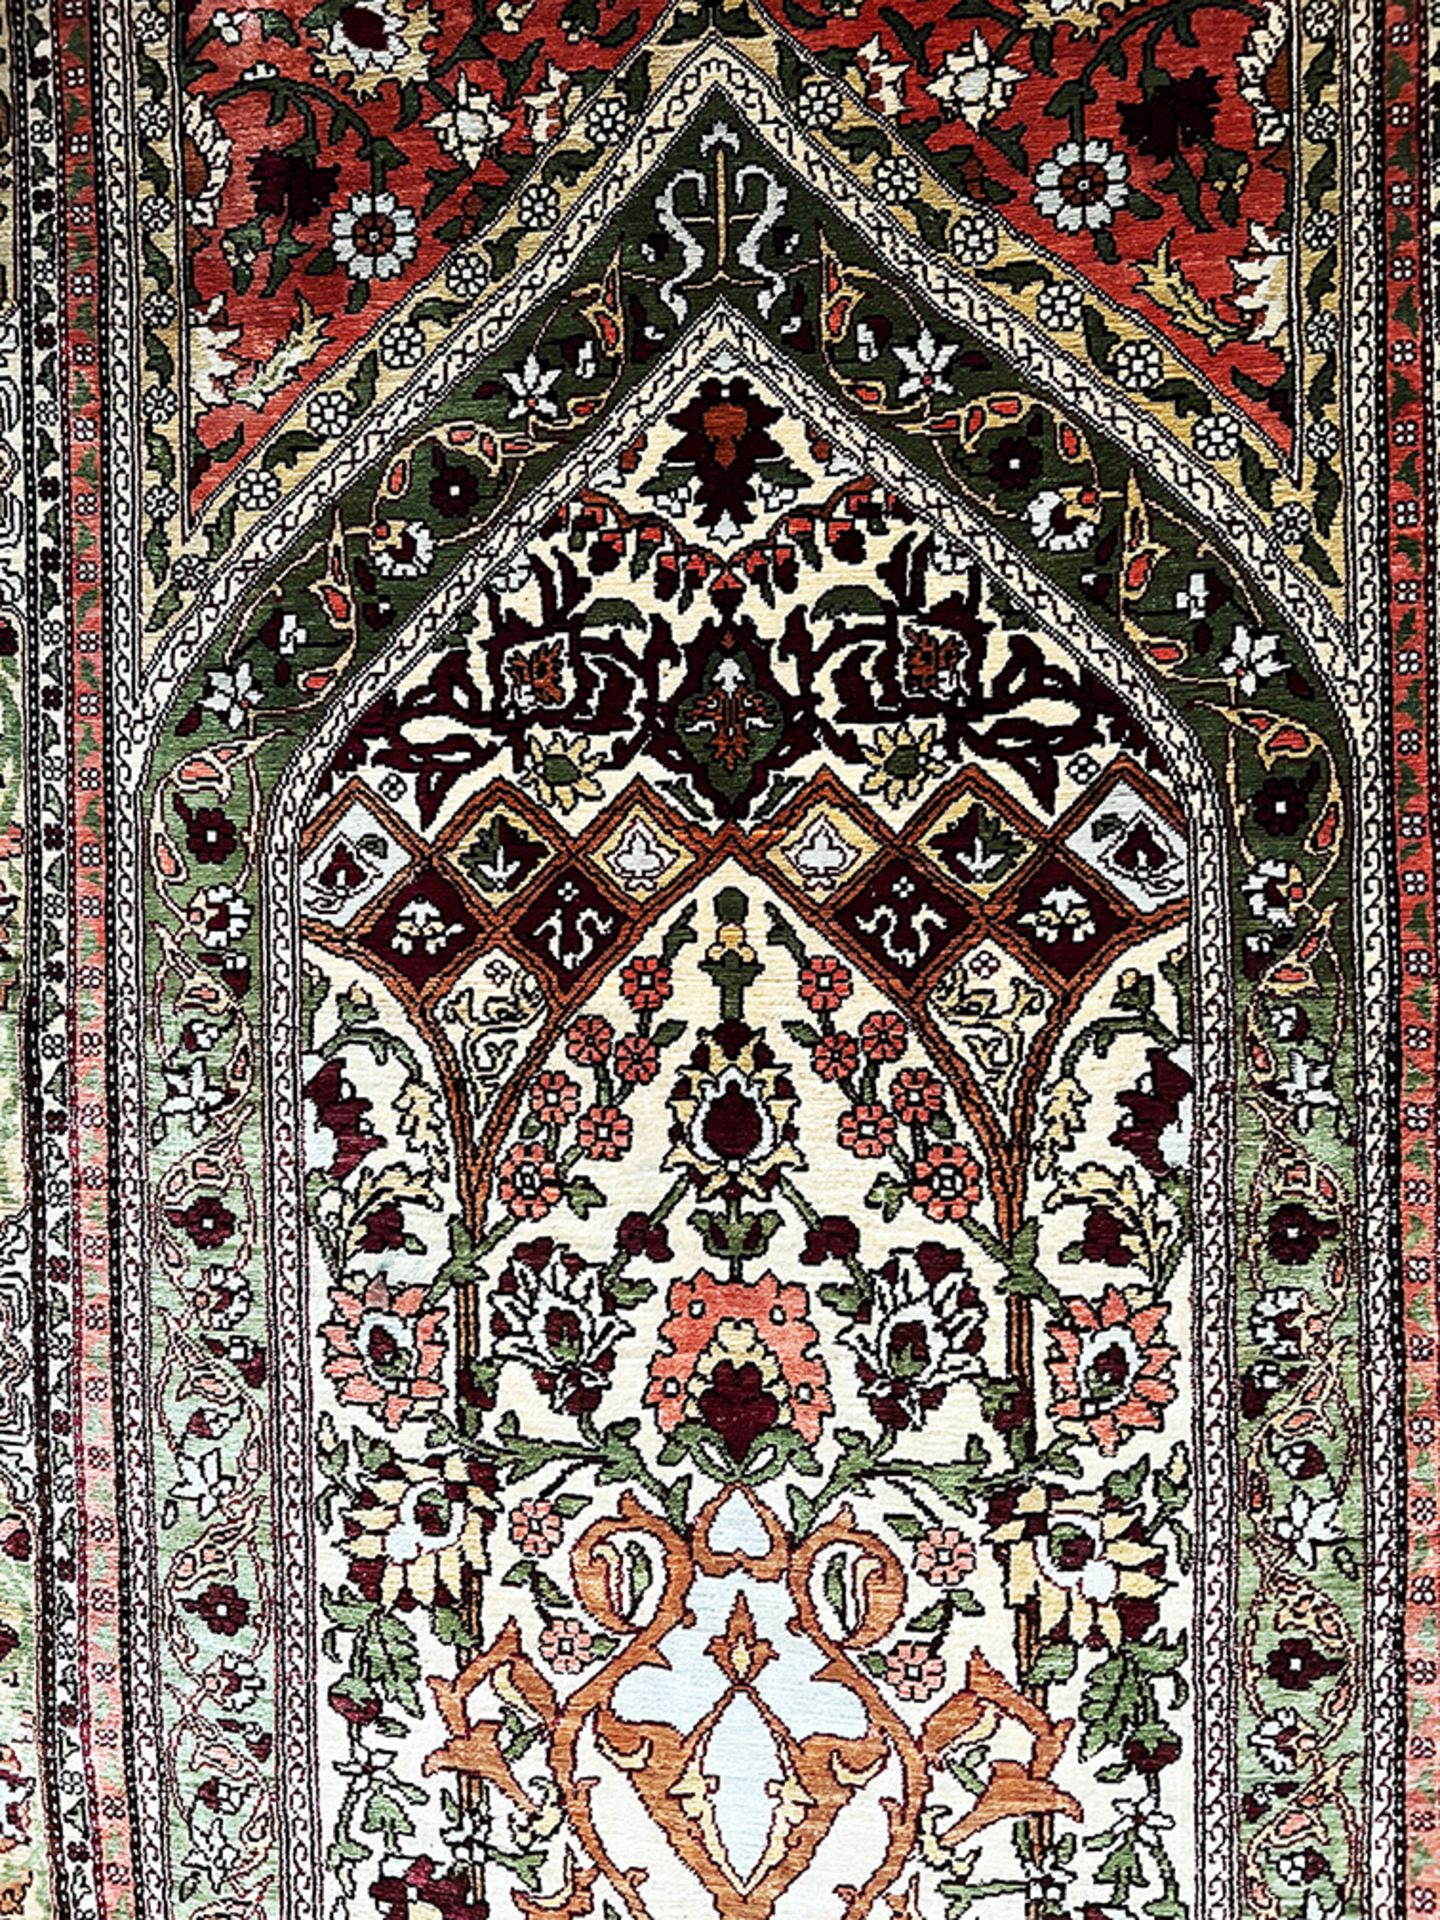 Teppich bzw. Wandteppich, Orient, Seide, mit arabischen Schriftzügen beschriftet, kaum Altersspuren, - Image 4 of 5